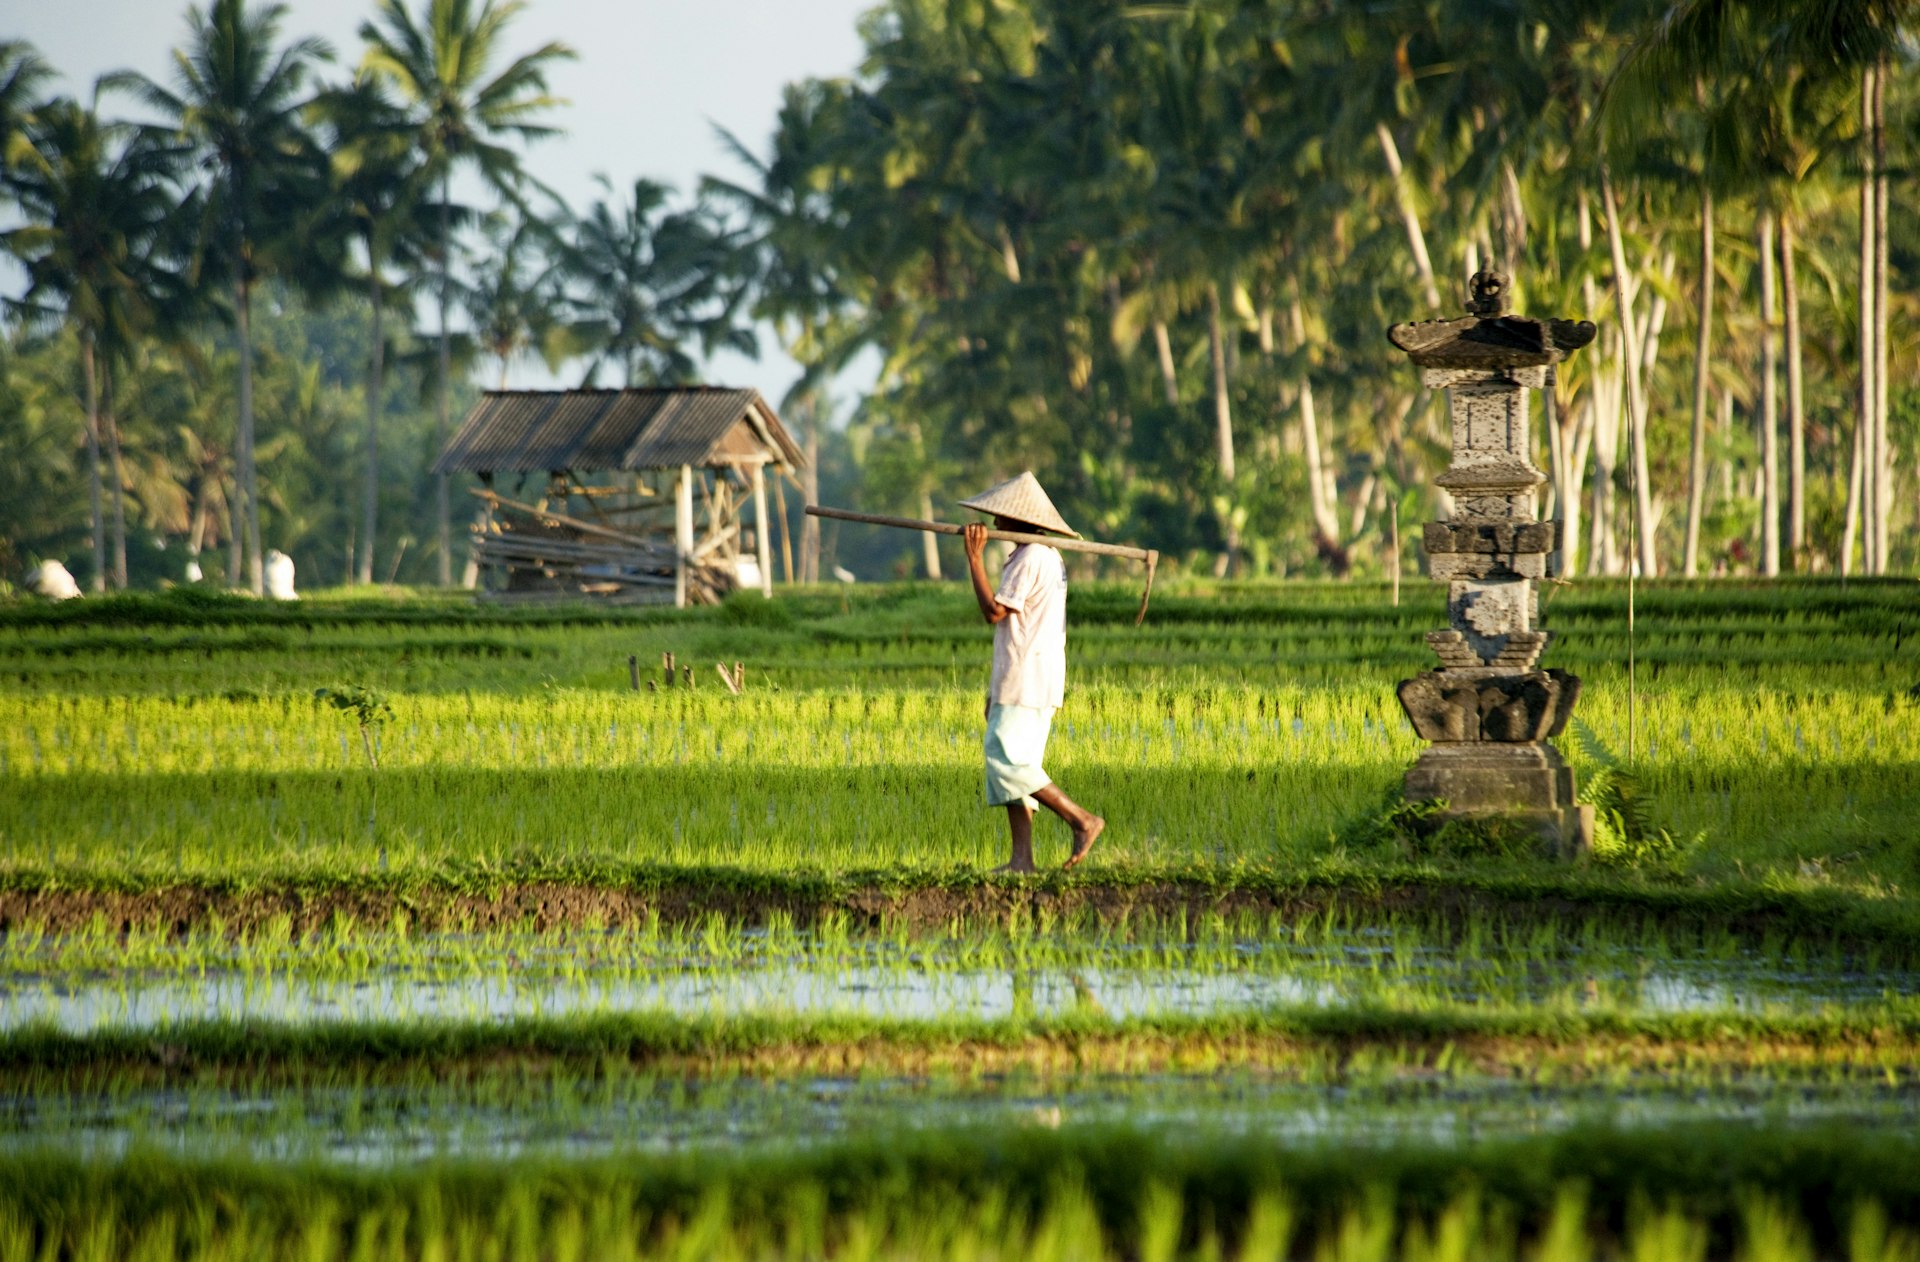 A farmer walking through rice paddies near Ubud, Bali